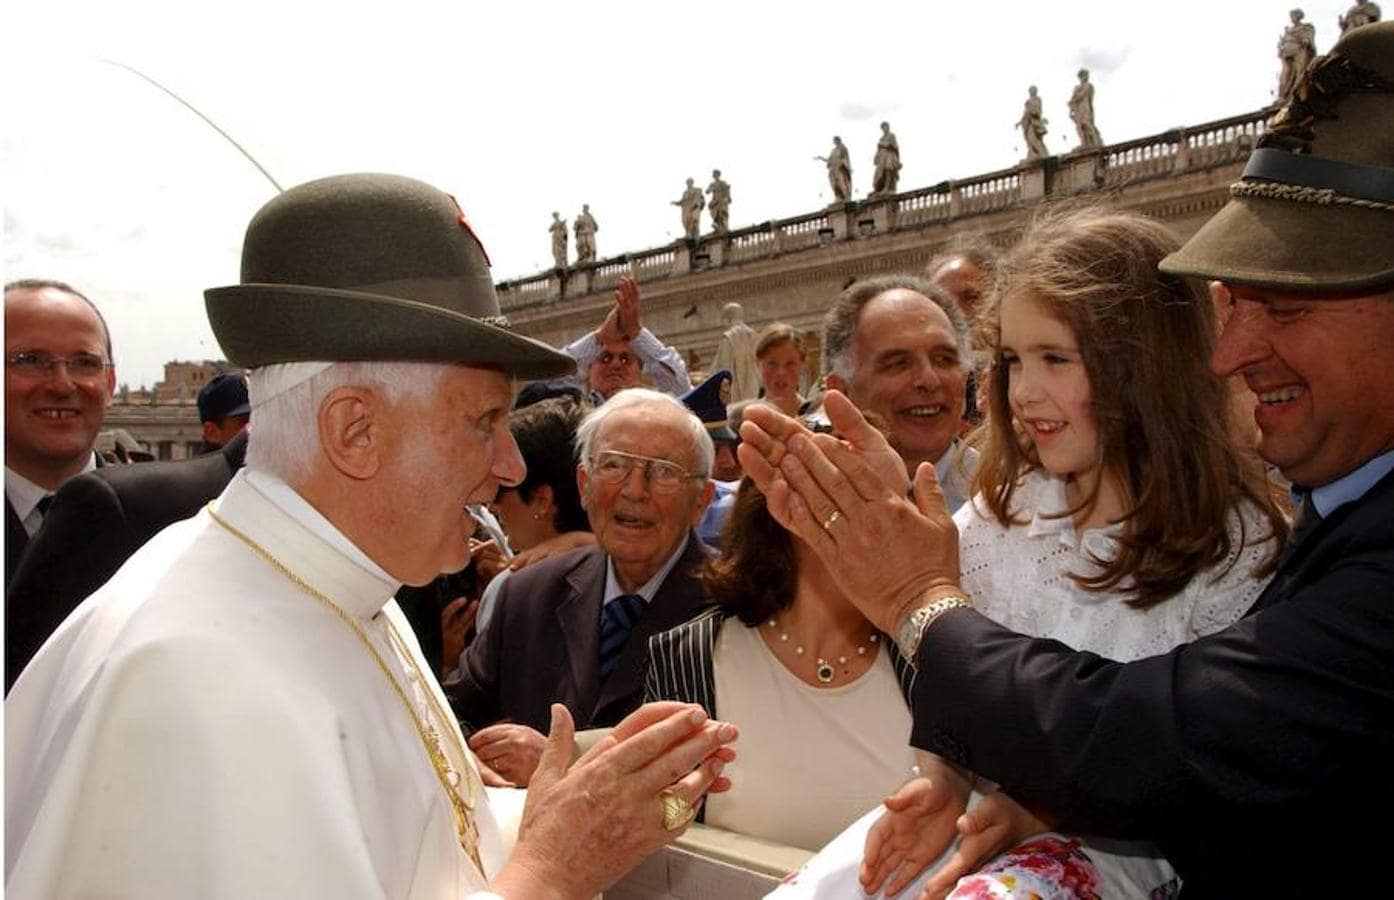 El papa Benedicto XVI sonríe mientras se prueba un gorro de las tropas alpinas de montaña en la plaza de San Pedro, con motivo de la audiencia de los miércoles, en la Ciudad del Vaticano